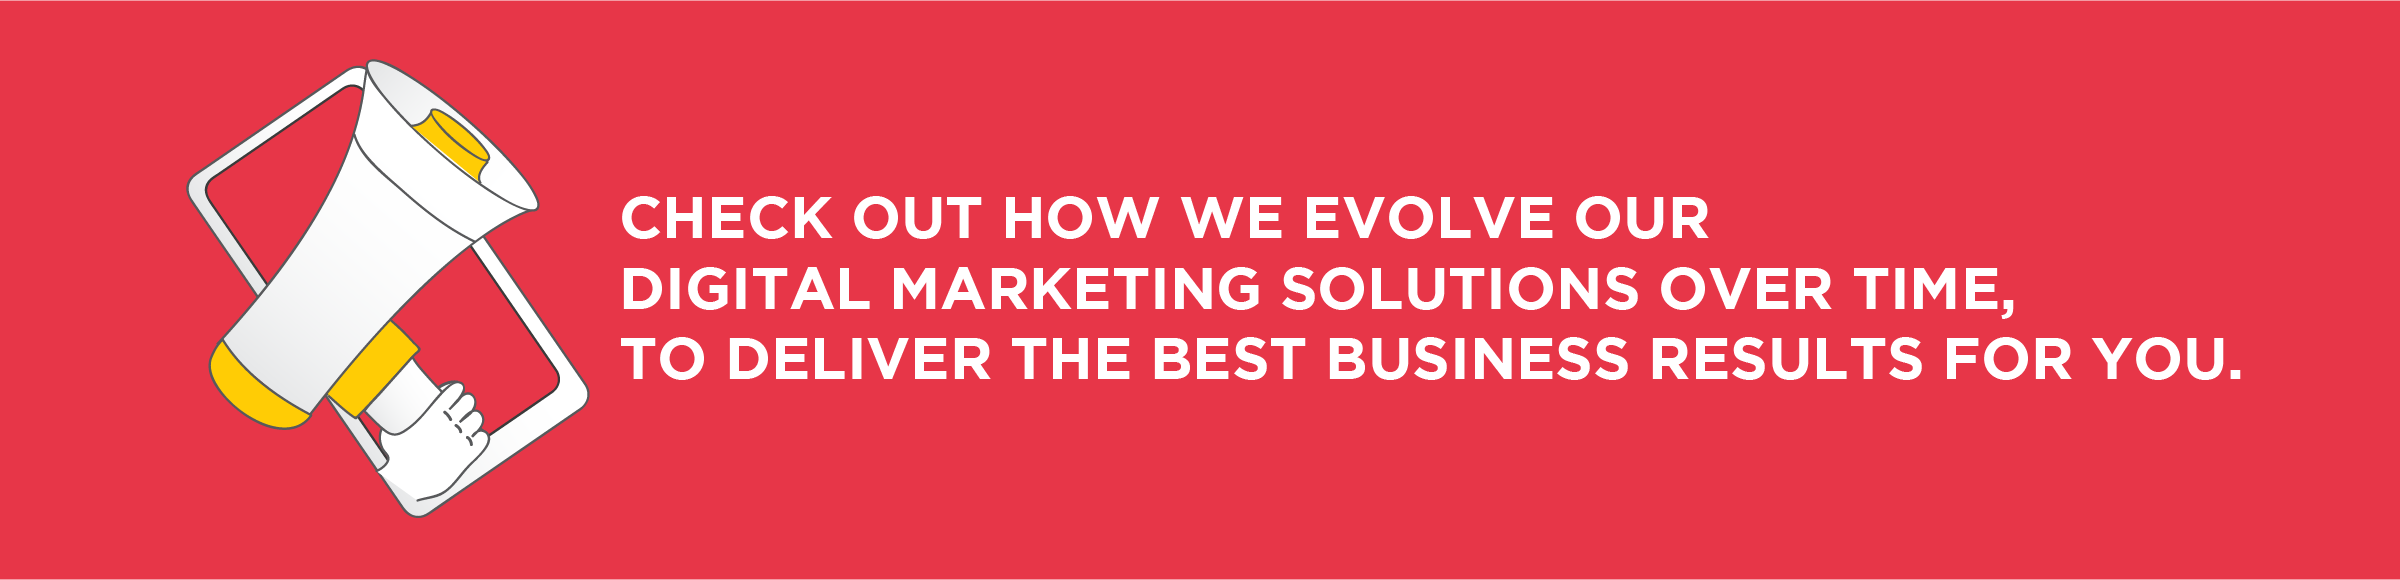 Evolve Digital Marketing Solutions